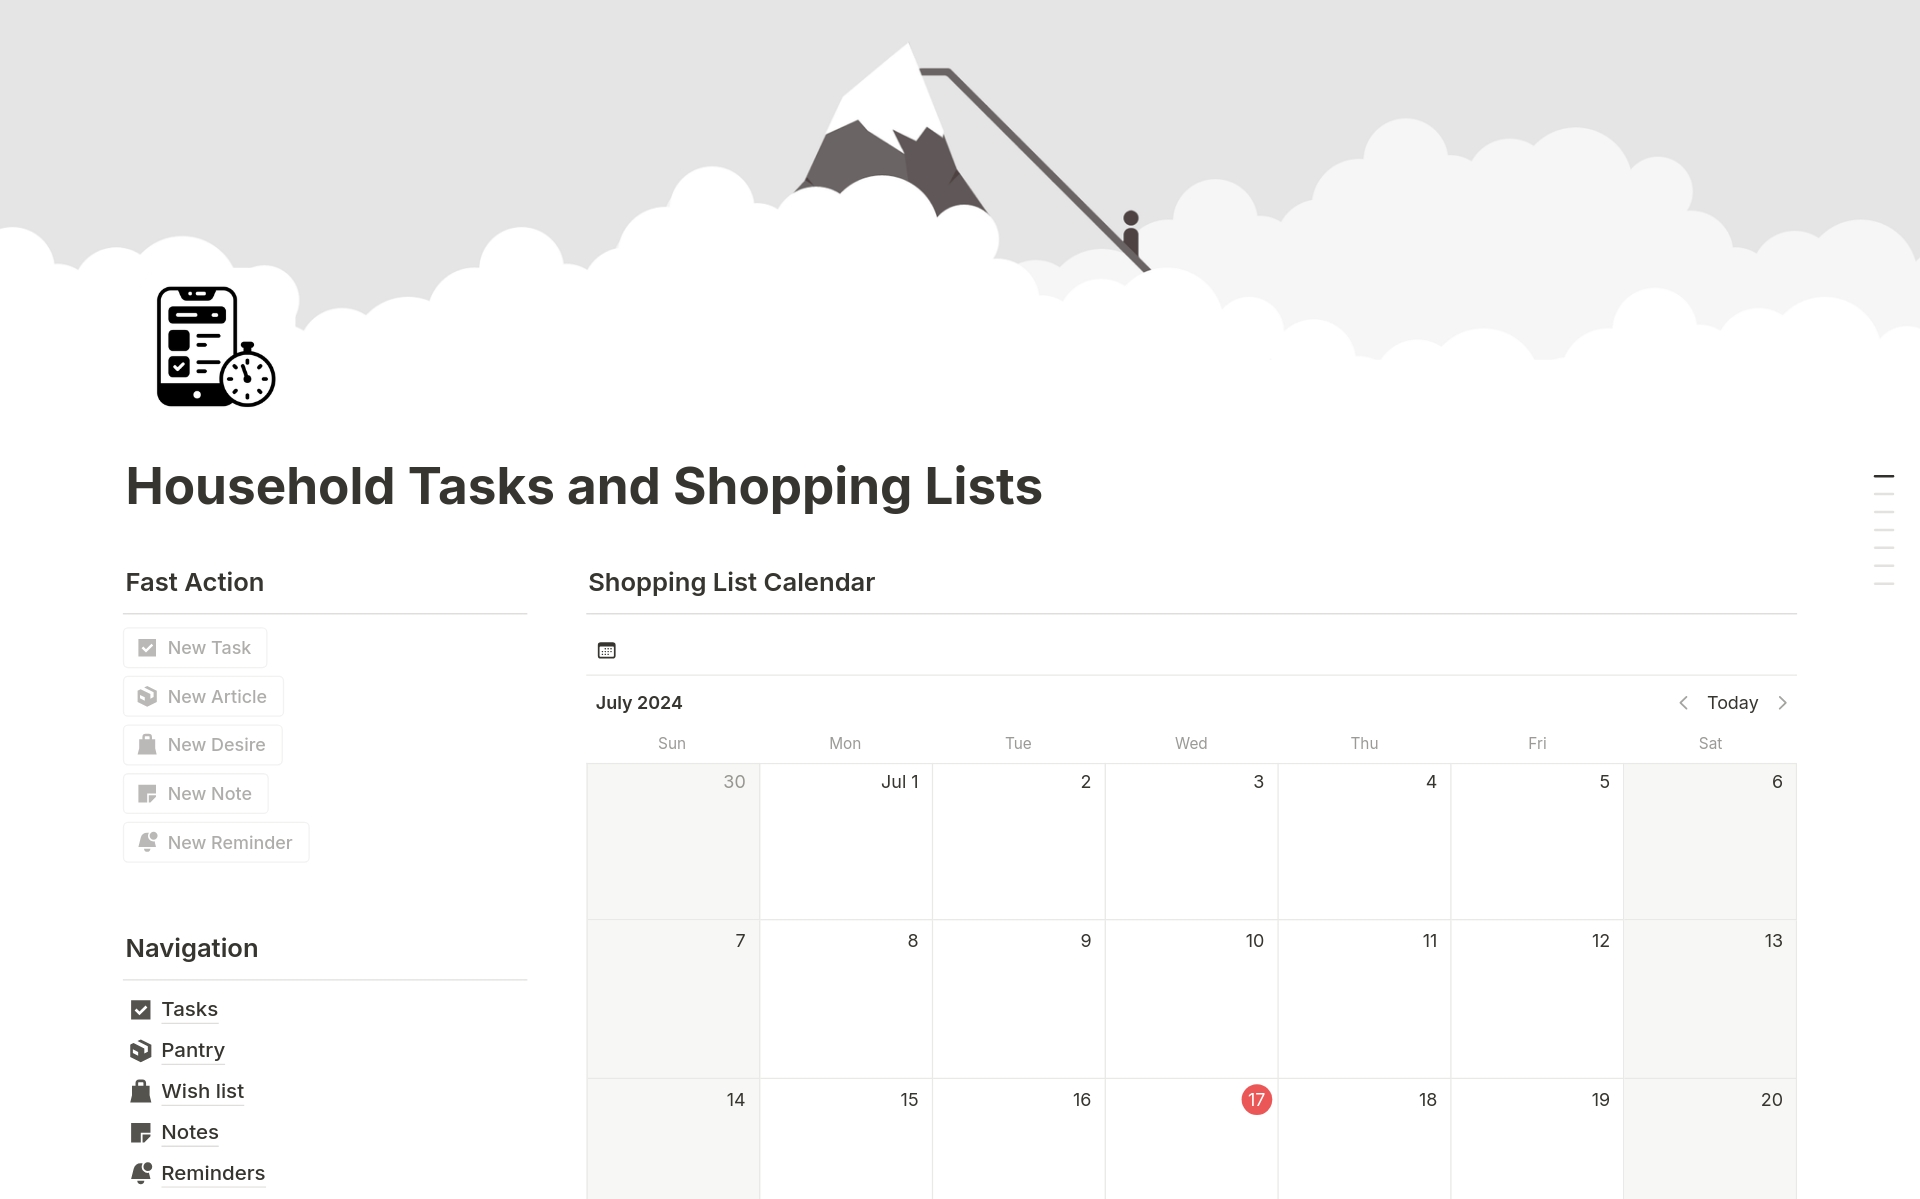 Uma prévia do modelo para Household Tasks and Shopping Lists